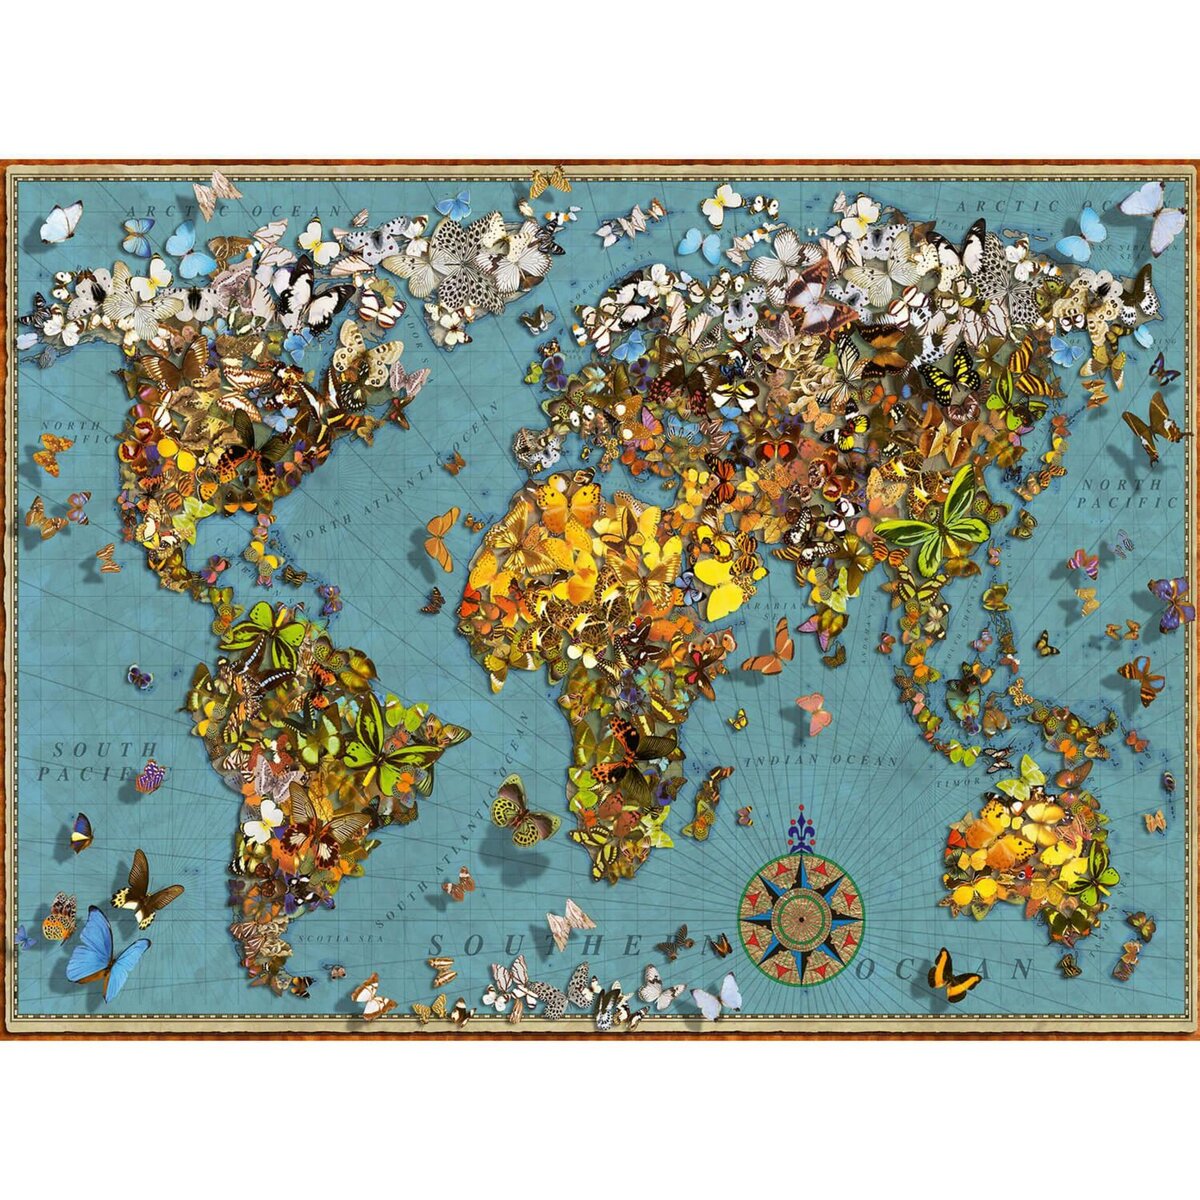 RAVENSBURGER - Puzzle - 2000p : Mappemonde 1650